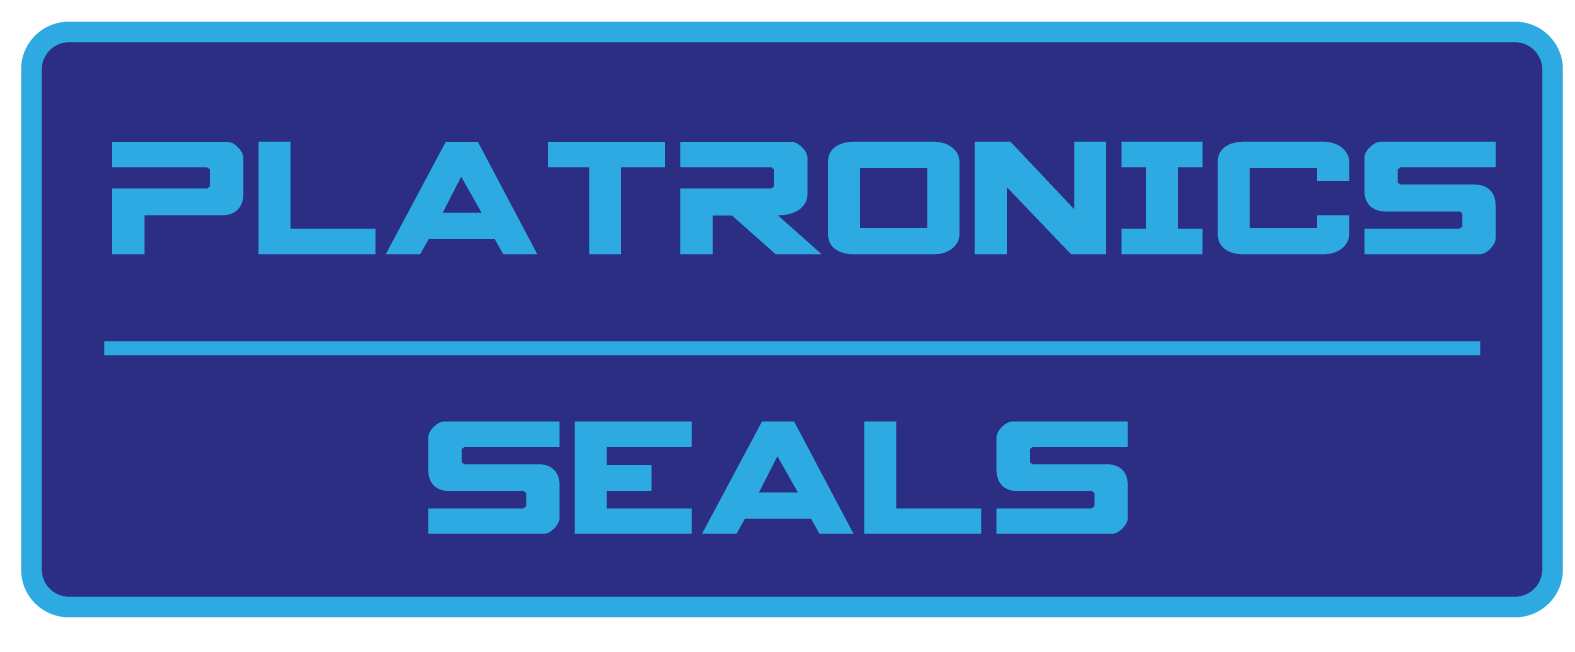 Platronics Seals